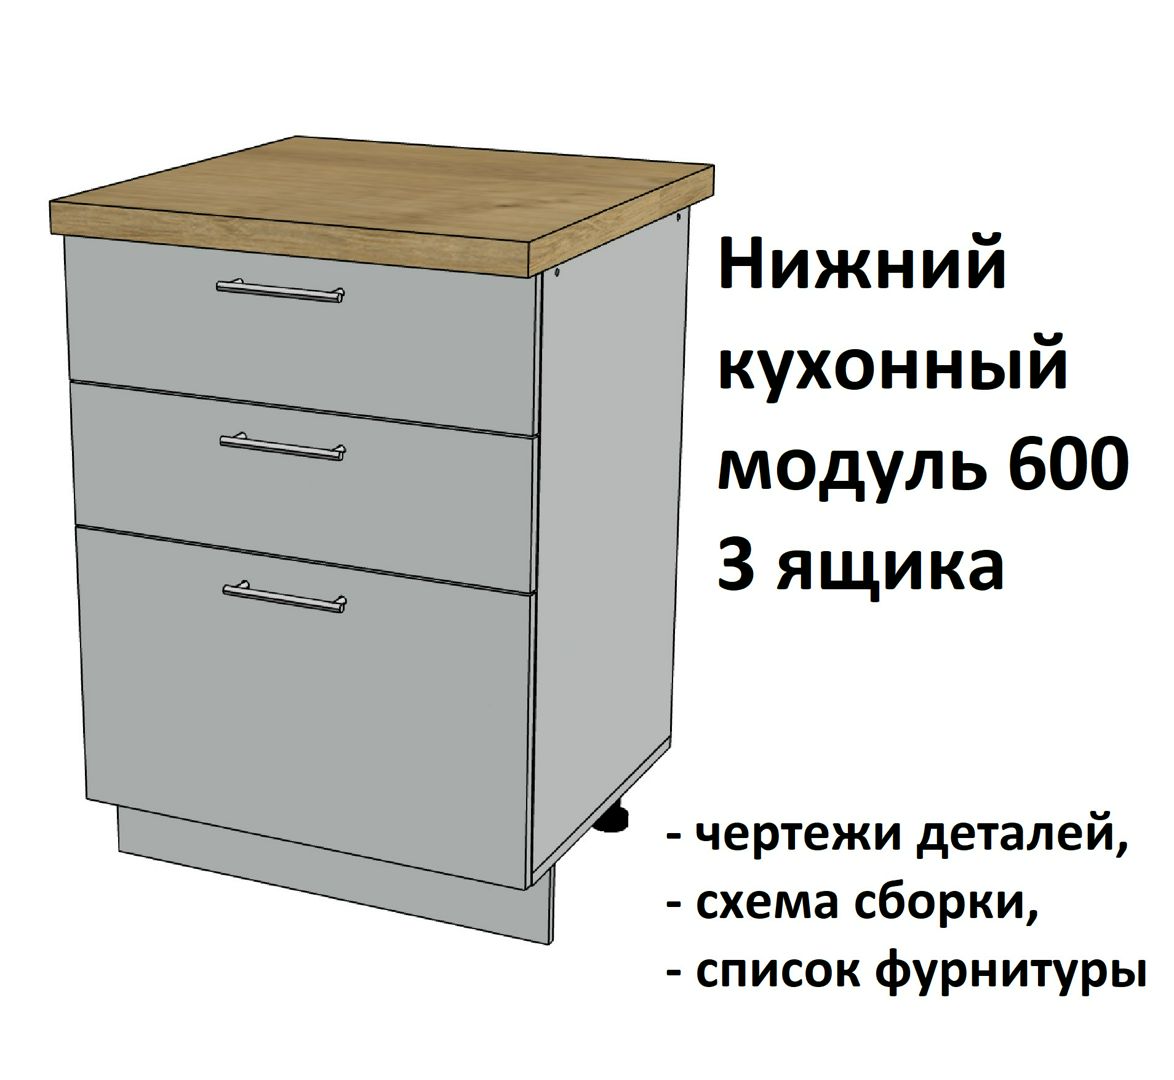 Нижний кухонный модуль 600, 3 ящика - Комплект чертежей для изготовления корпусной мебели